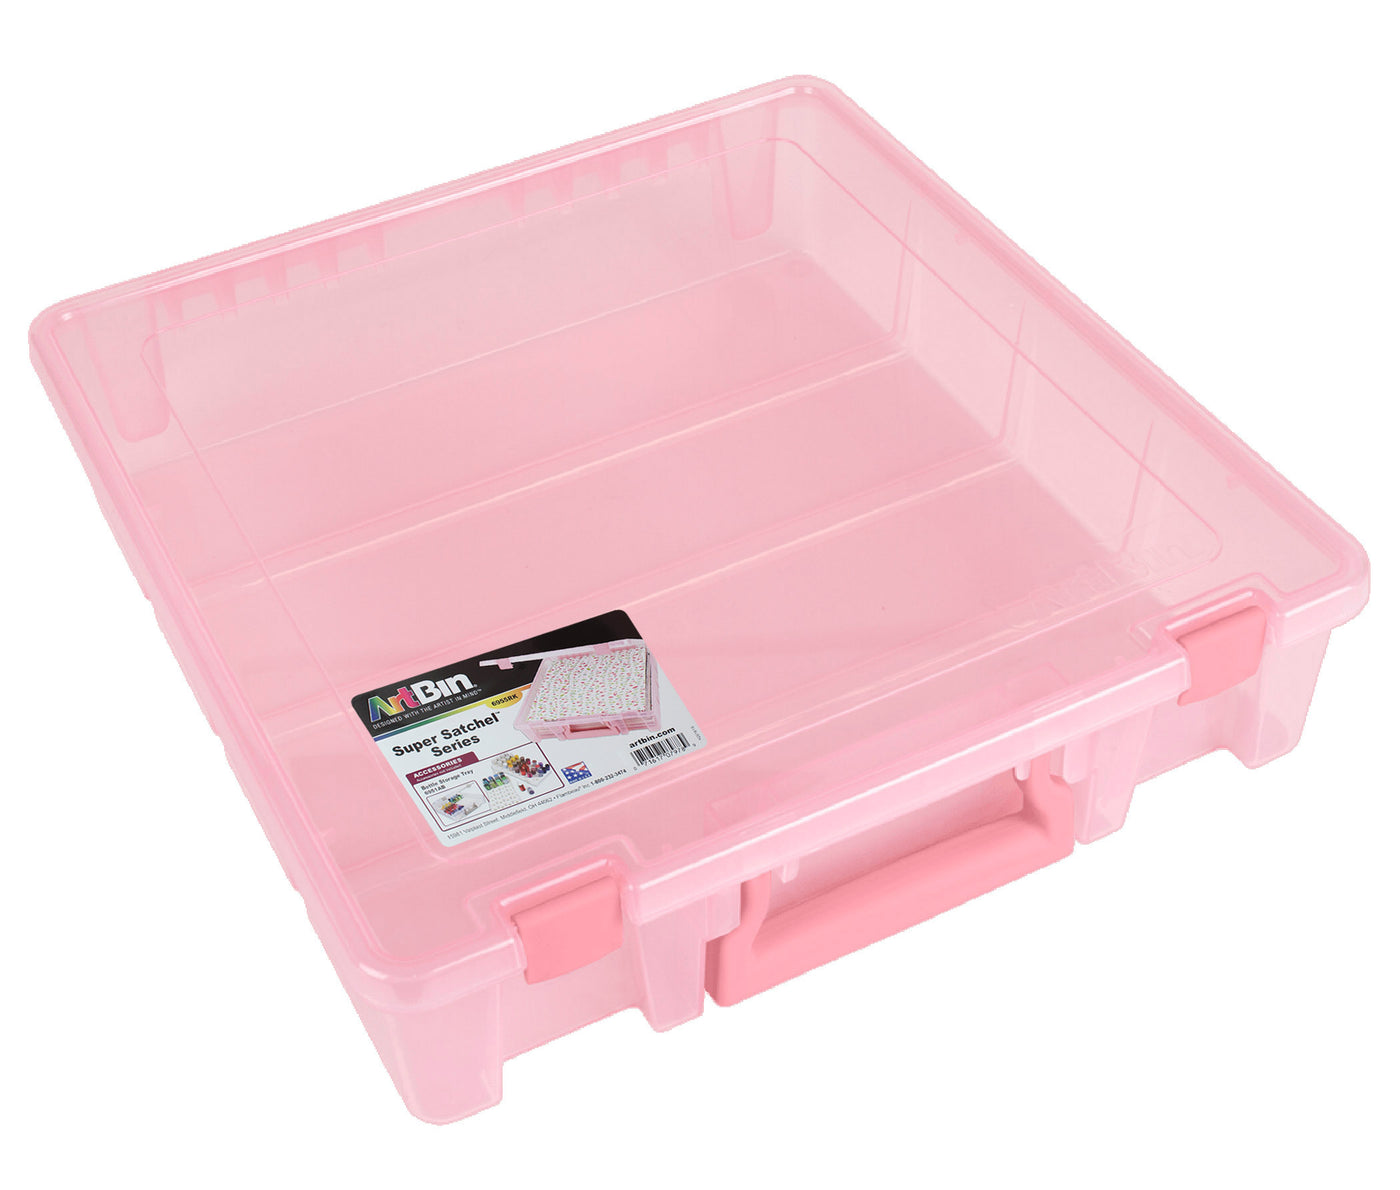 Super Satchel  Project Box - Pink